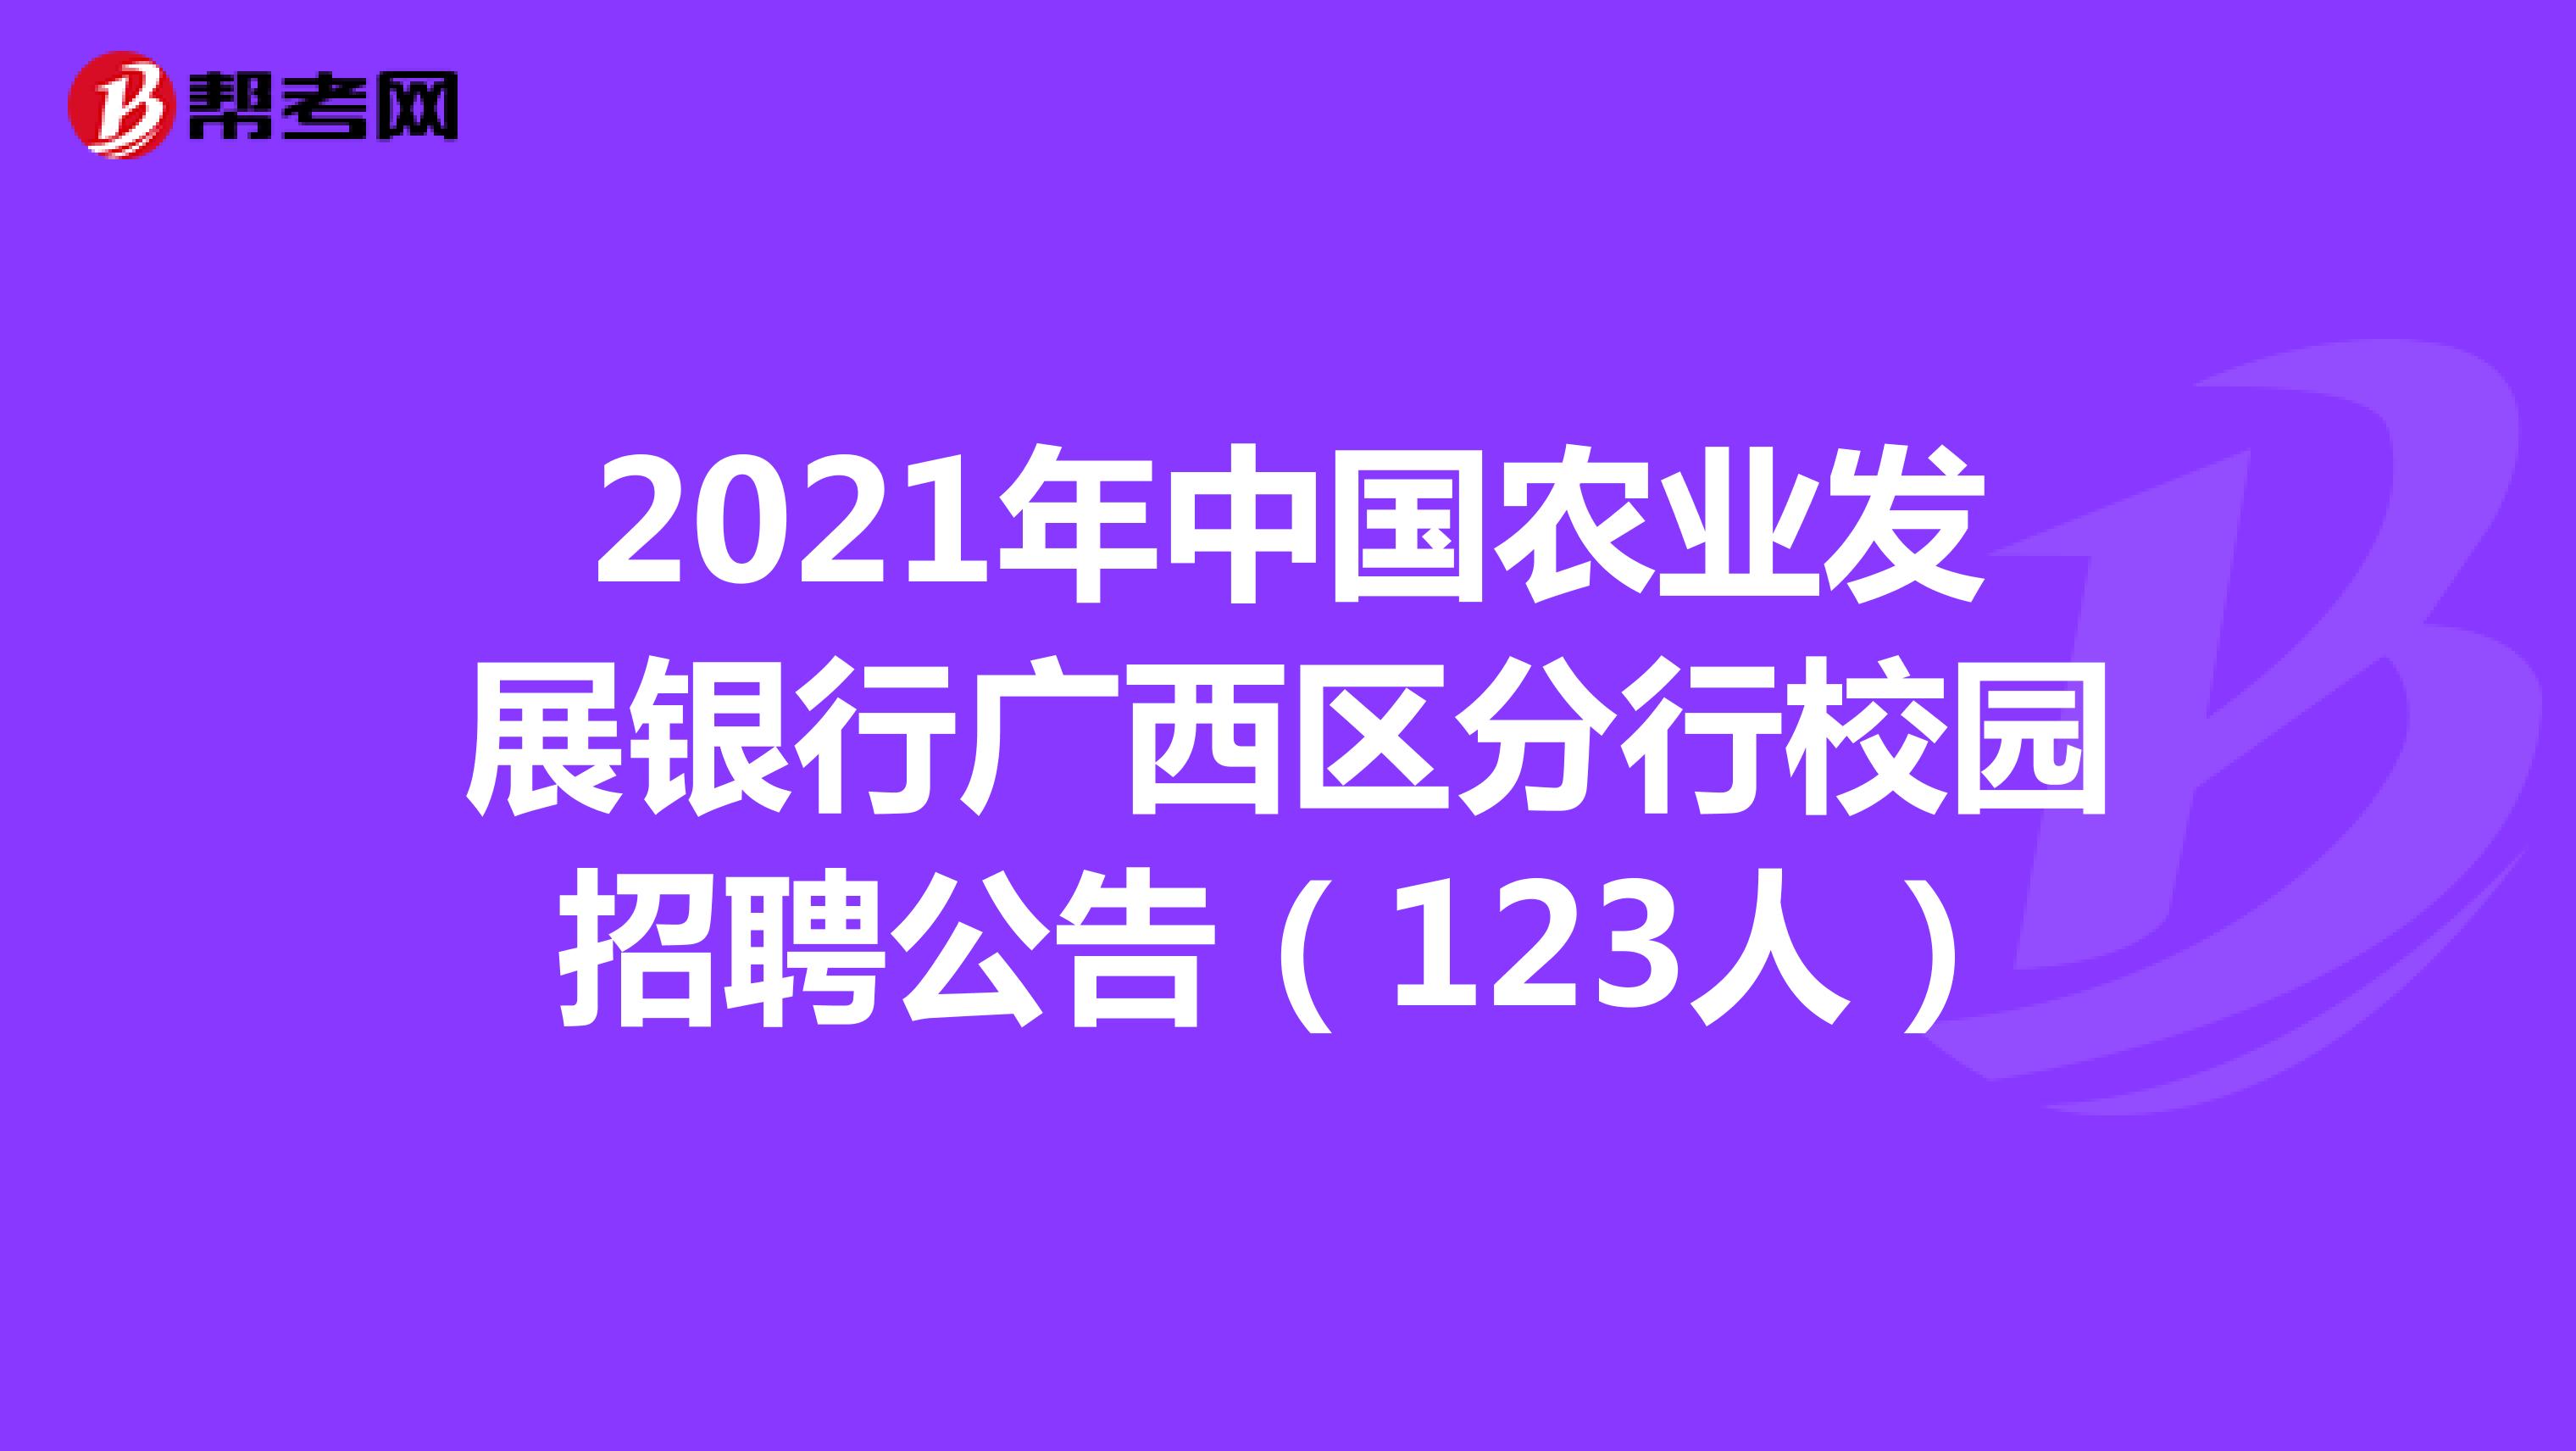 2021年中国农业发展银行广西区分行校园招聘公告（123人）